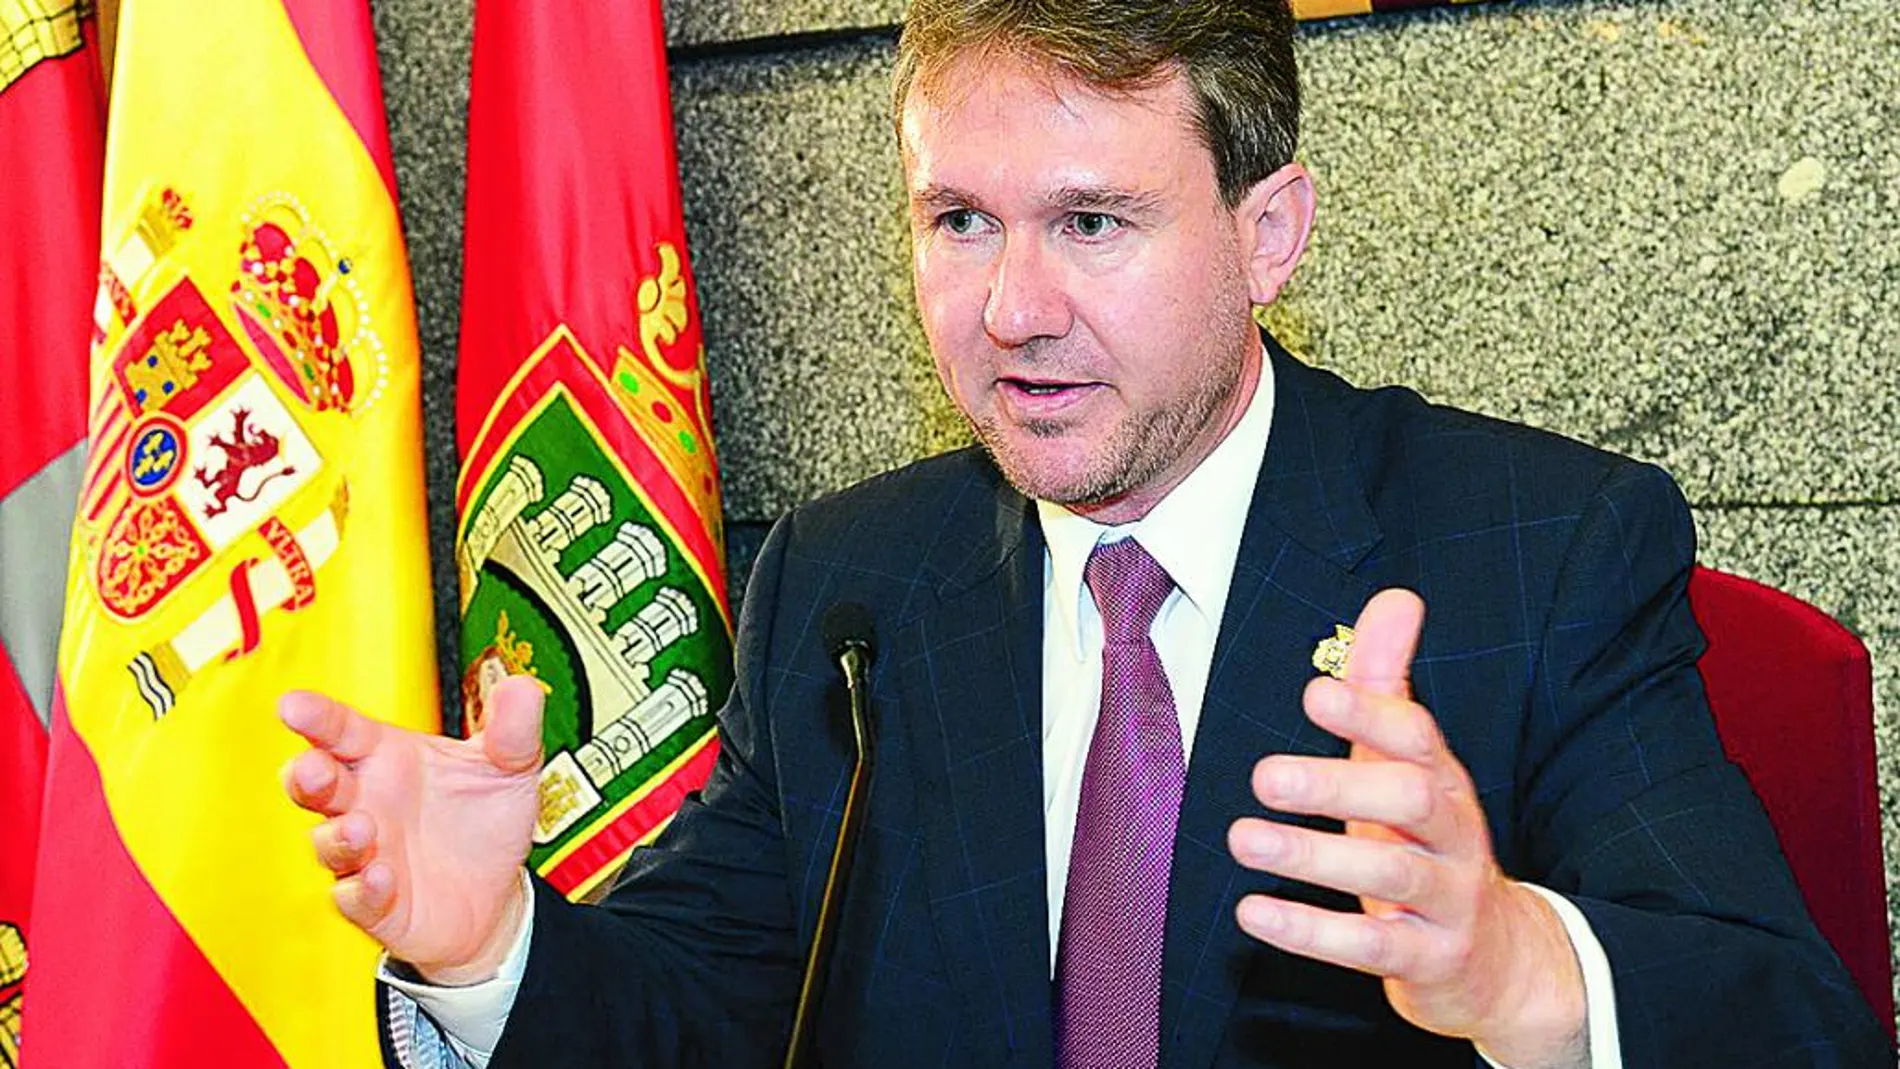 El alcalde de Burgos, Javier Lacalle, explica el nuevo acuerdo de la Mesa del Diálogo Social